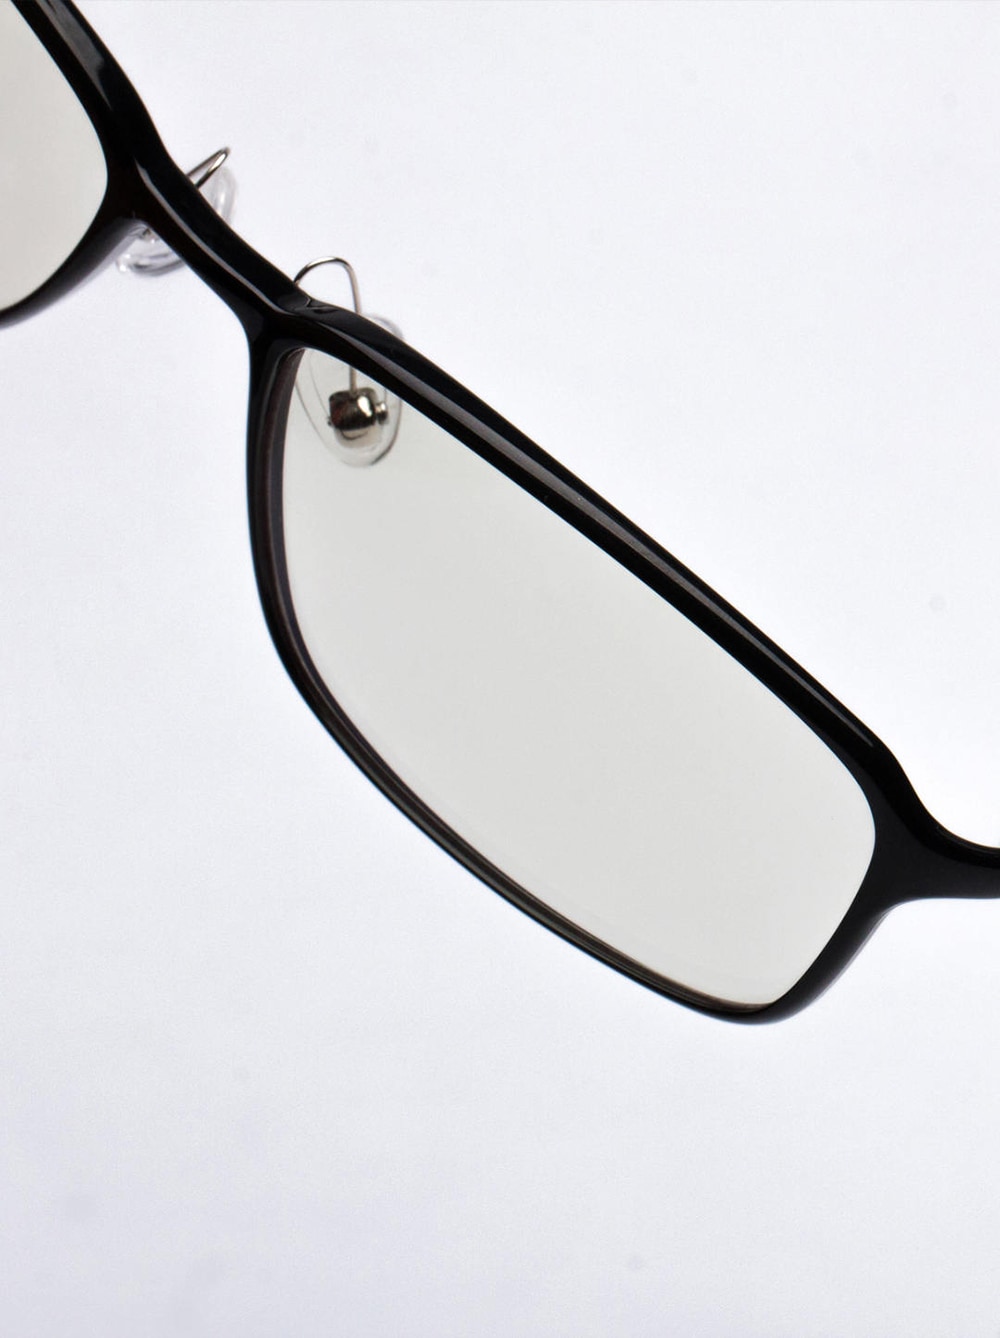 TS Anti-Blu-ray UV400 Glasses from Xiaomi mijia- Black